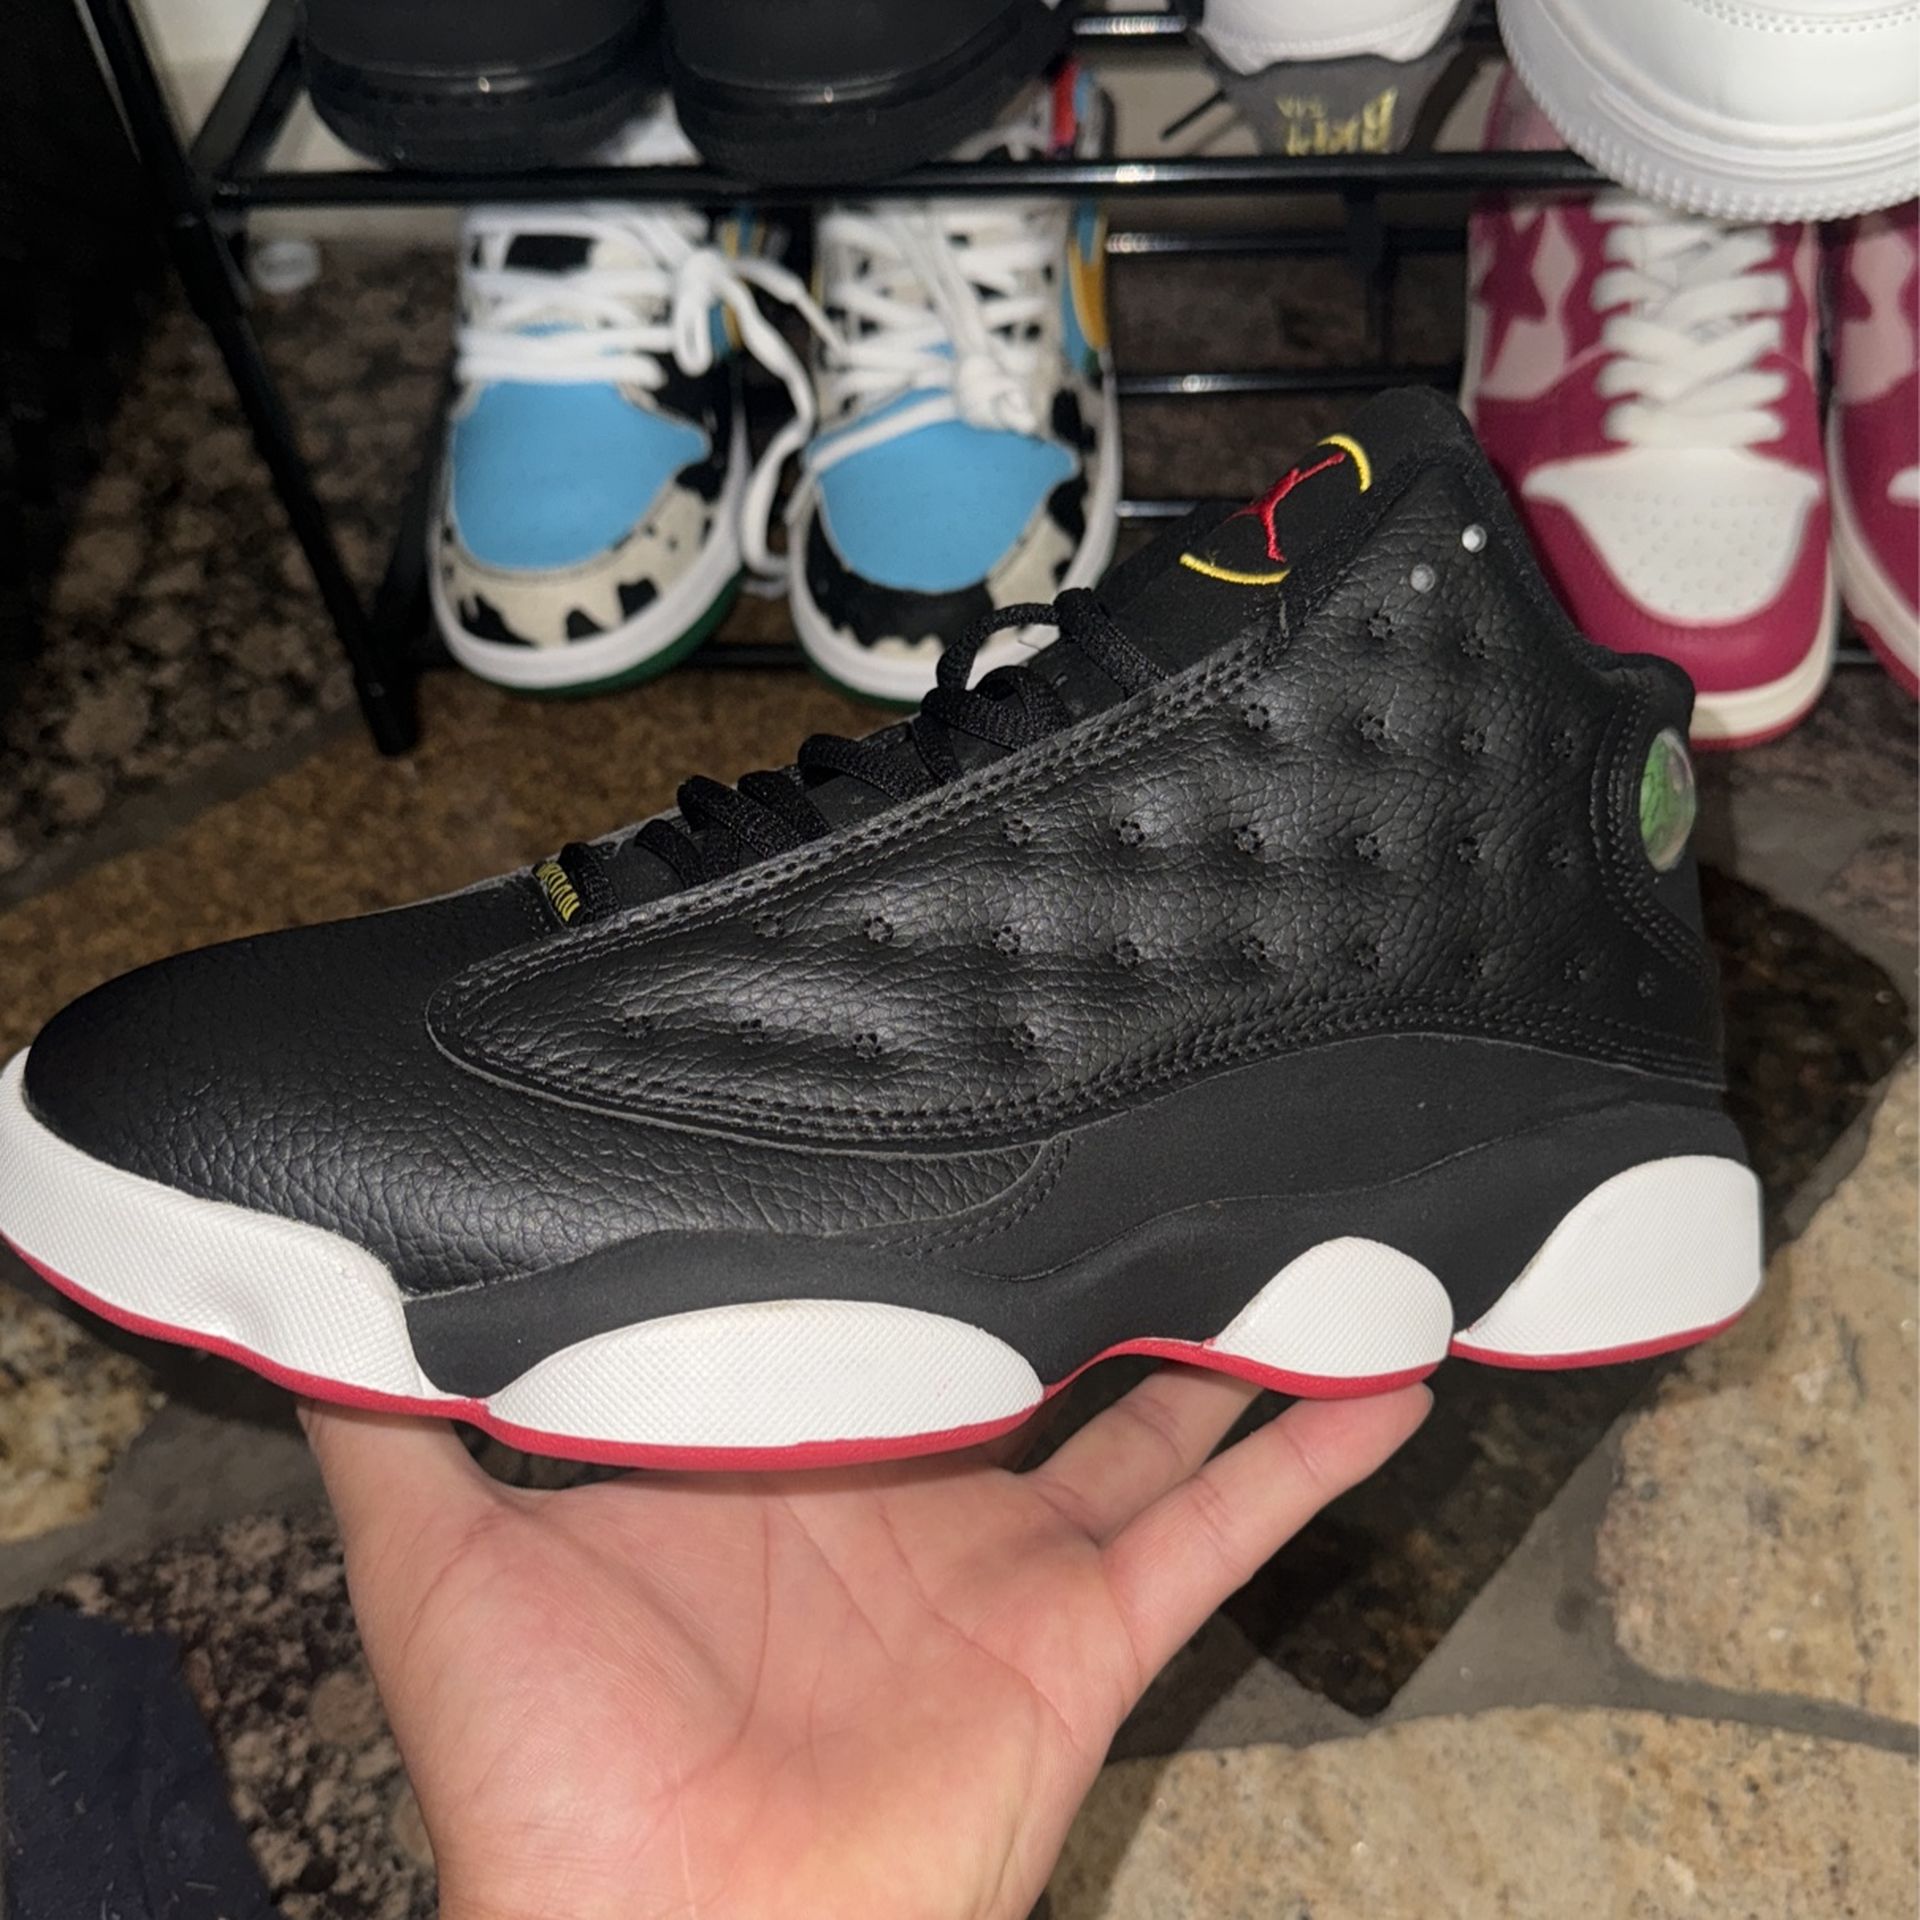 Jordan 13 Size 9.5